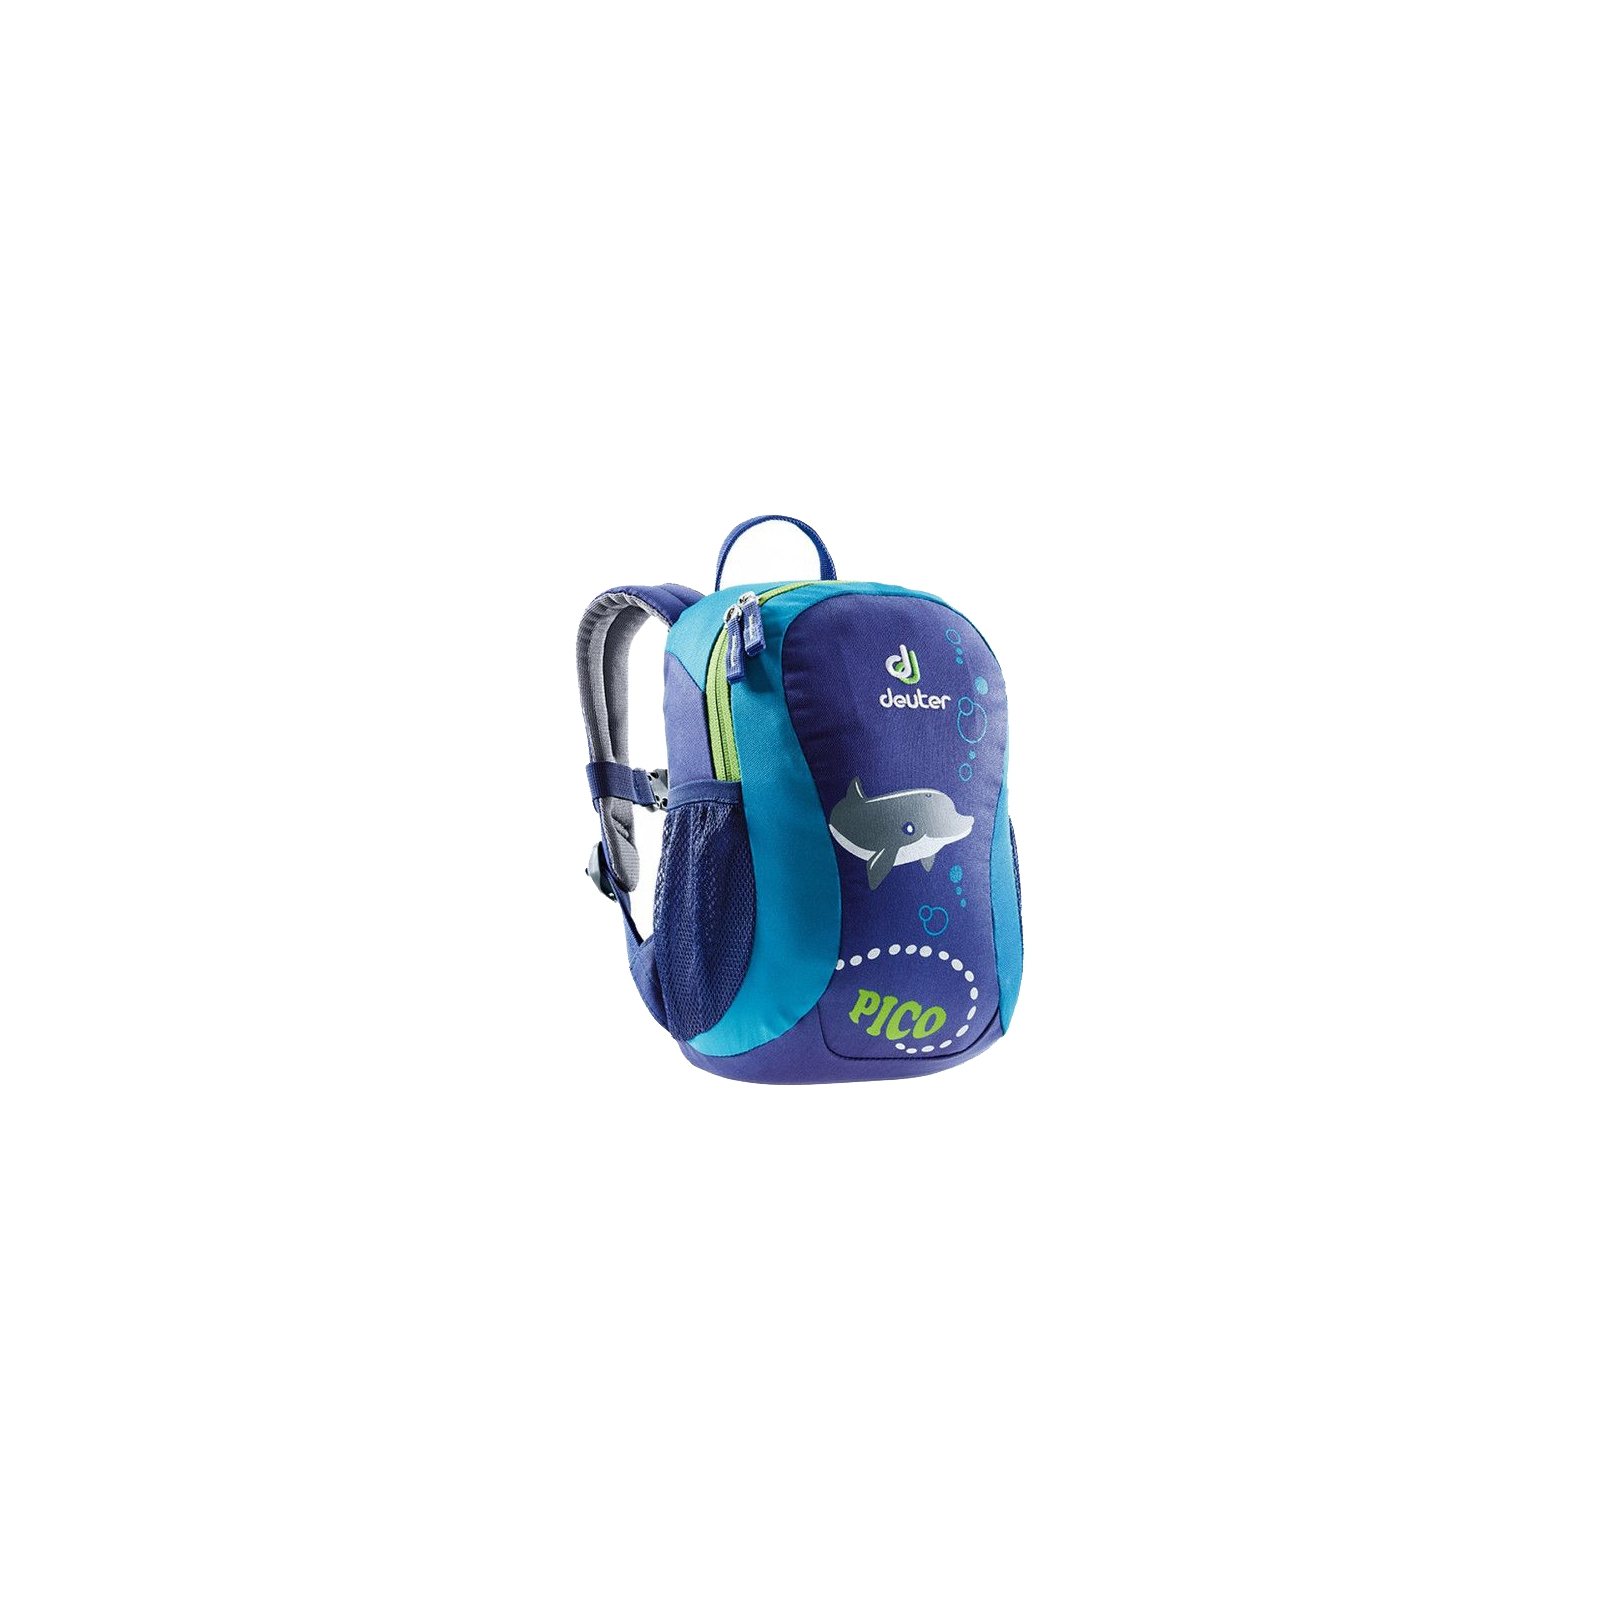 Рюкзак школьный Deuter Pico 3391 indigo-turquoise (36043 3391)